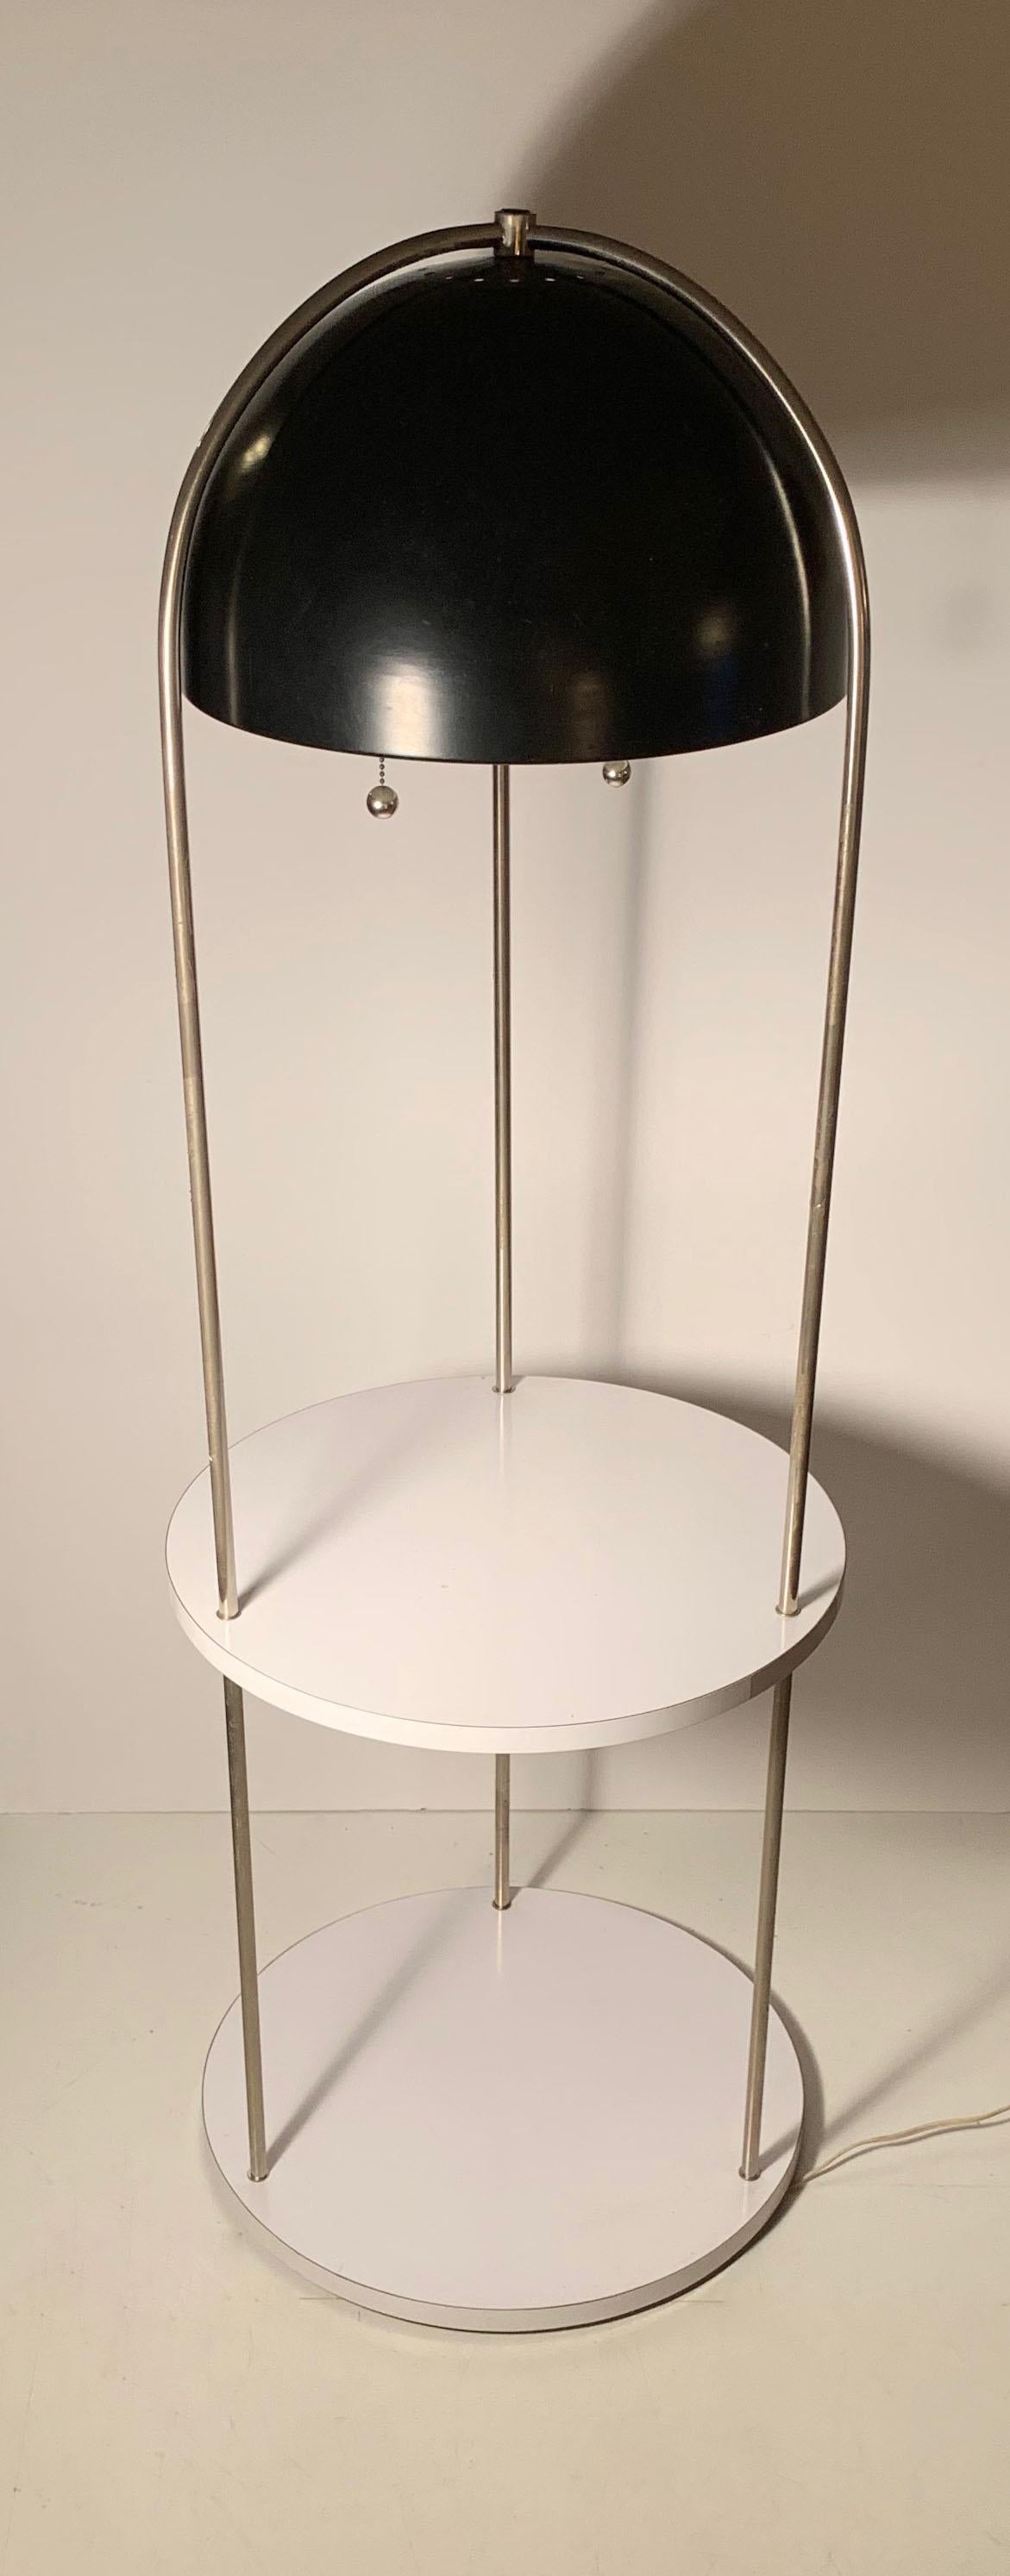 Vintage-Stehlampe, die Kovacs zugeschrieben wird. Kein Label gefunden. Eine postmoderne, architektonisch hochwertige Stehleuchte mit mehrstufigen Tischflächen und abgehängtem schwarzen Reflektor in Form einer Kuppel. Eine seltene Form, die es zu